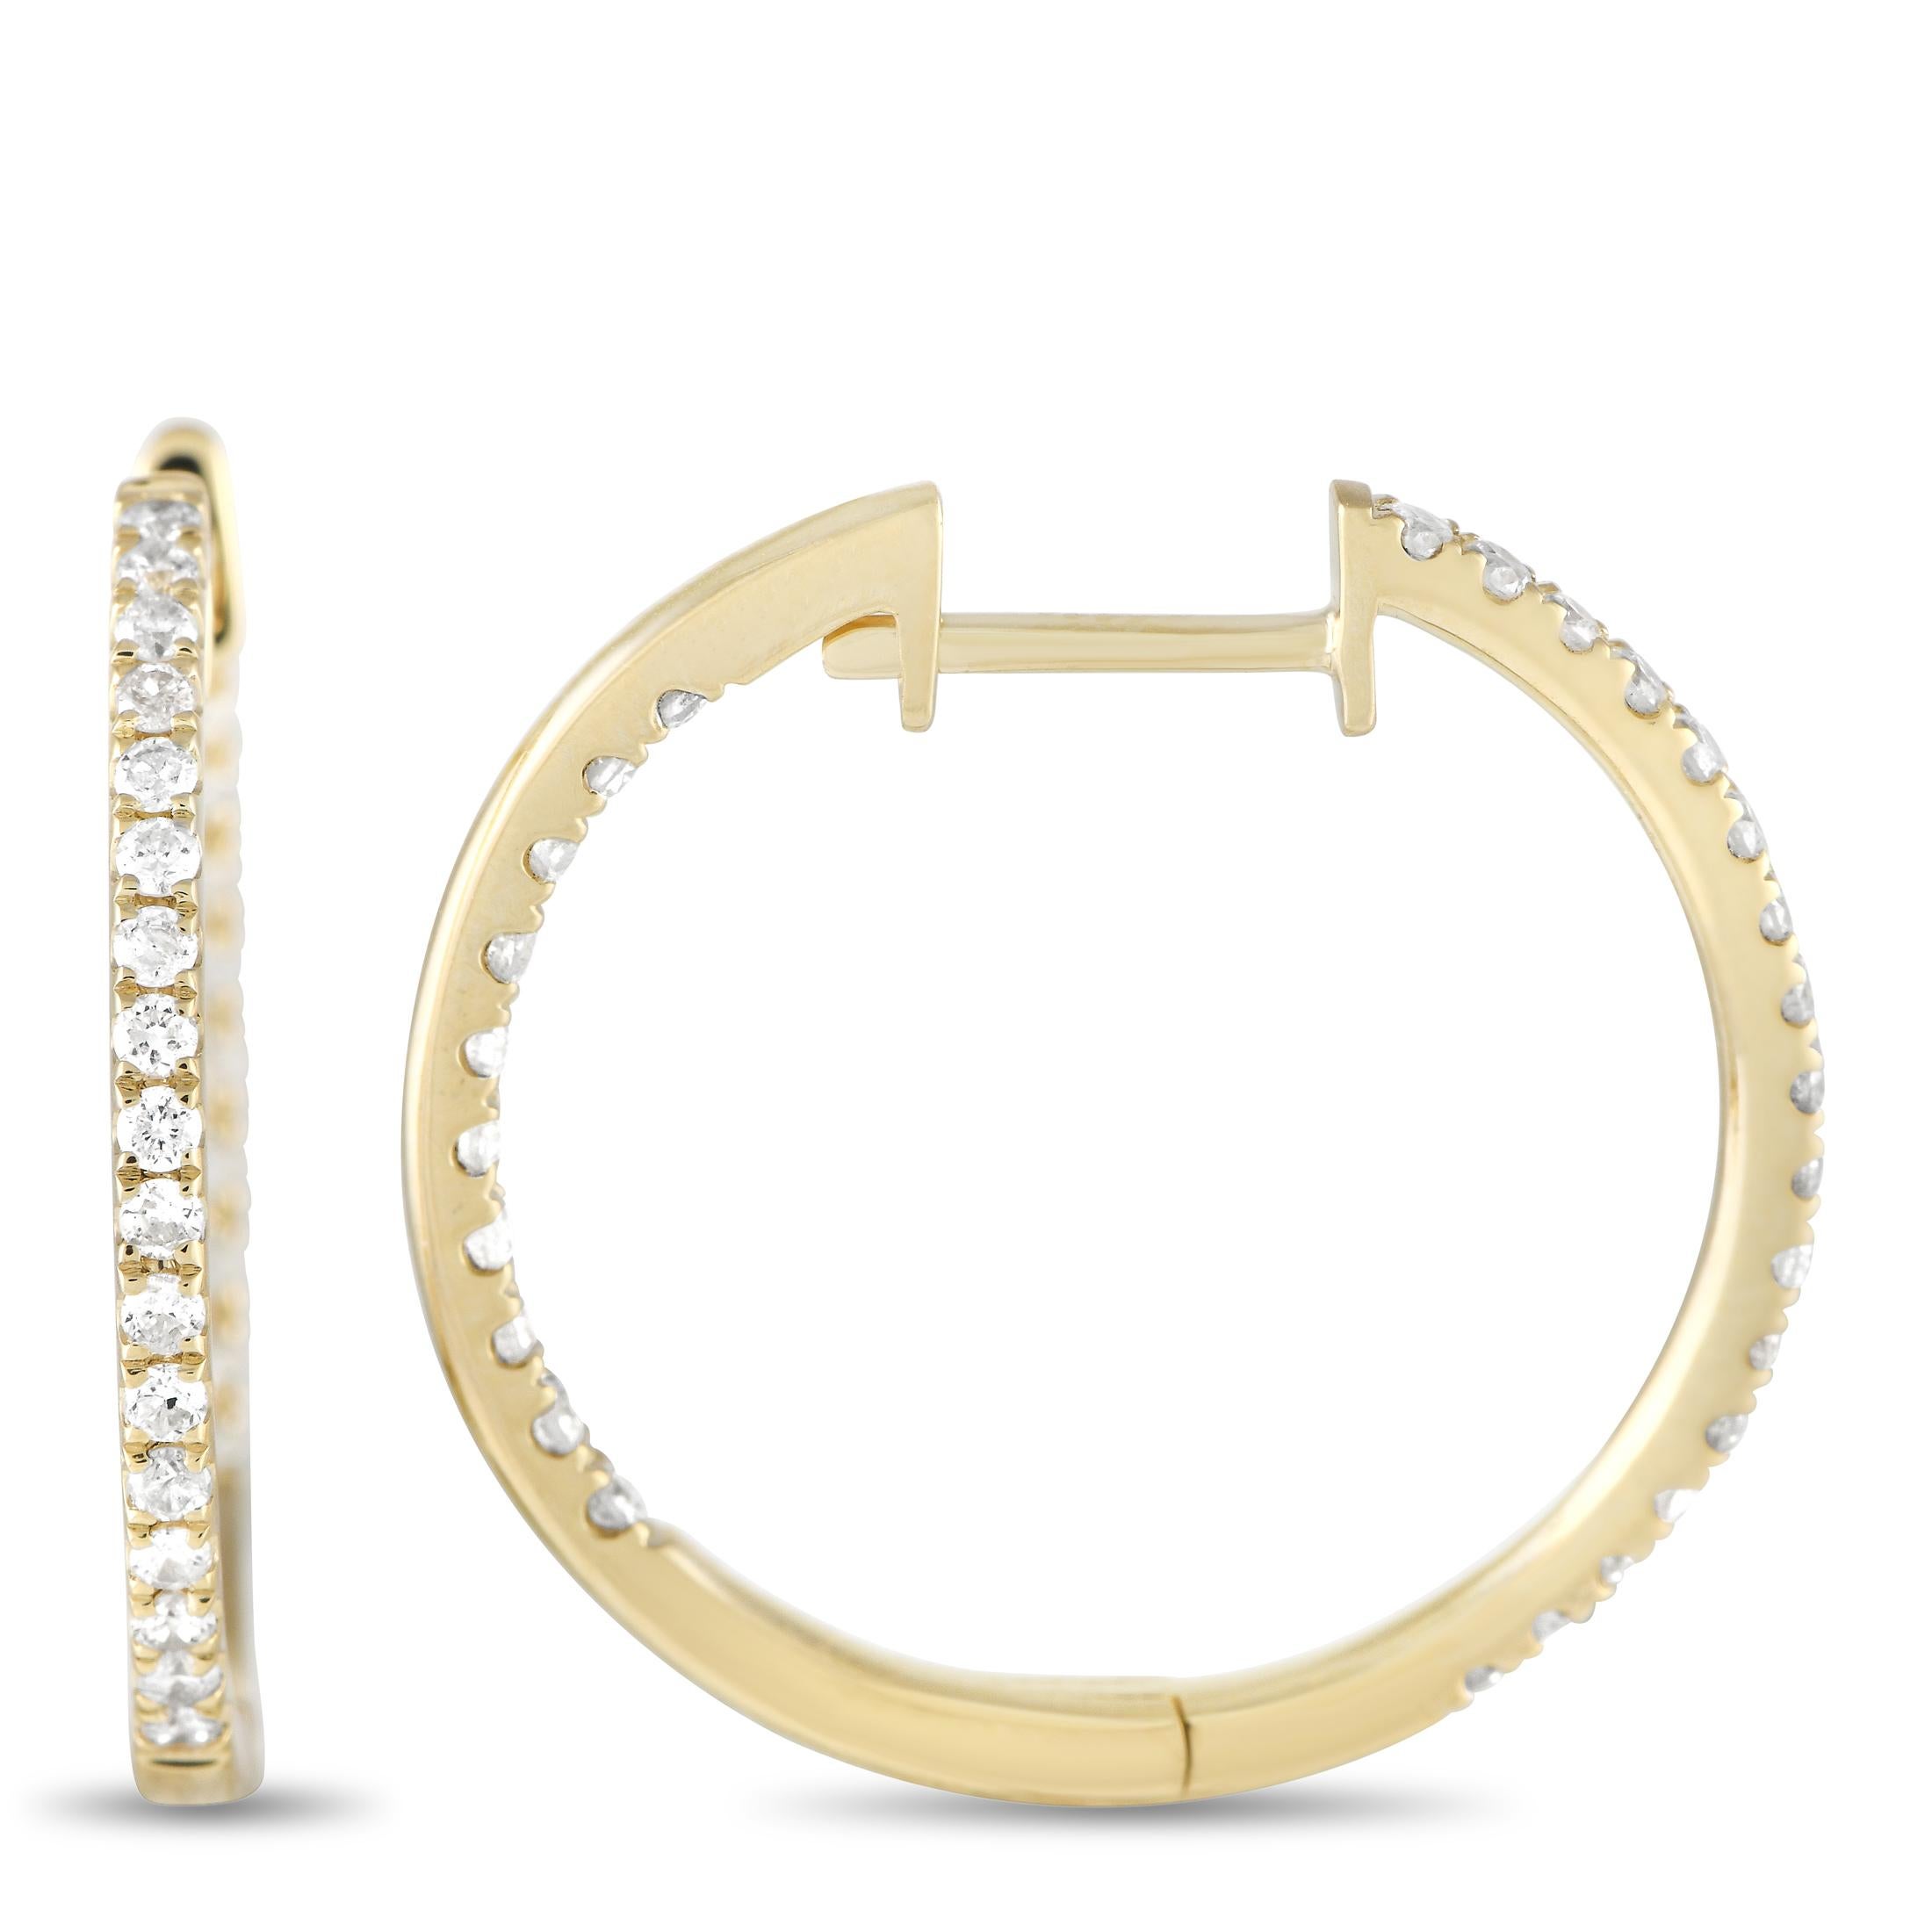 Diese schillernden Reif-Ohrringe verleihen jedem Ensemble den perfekten Schliff. Diamanten mit einem Gesamtgewicht von 0,50 Karat funkeln auf fast jedem Zentimeter dieser eleganten Ohrringe. Jedes Stück ist in 14K Gelbgold gefasst und misst 0,75